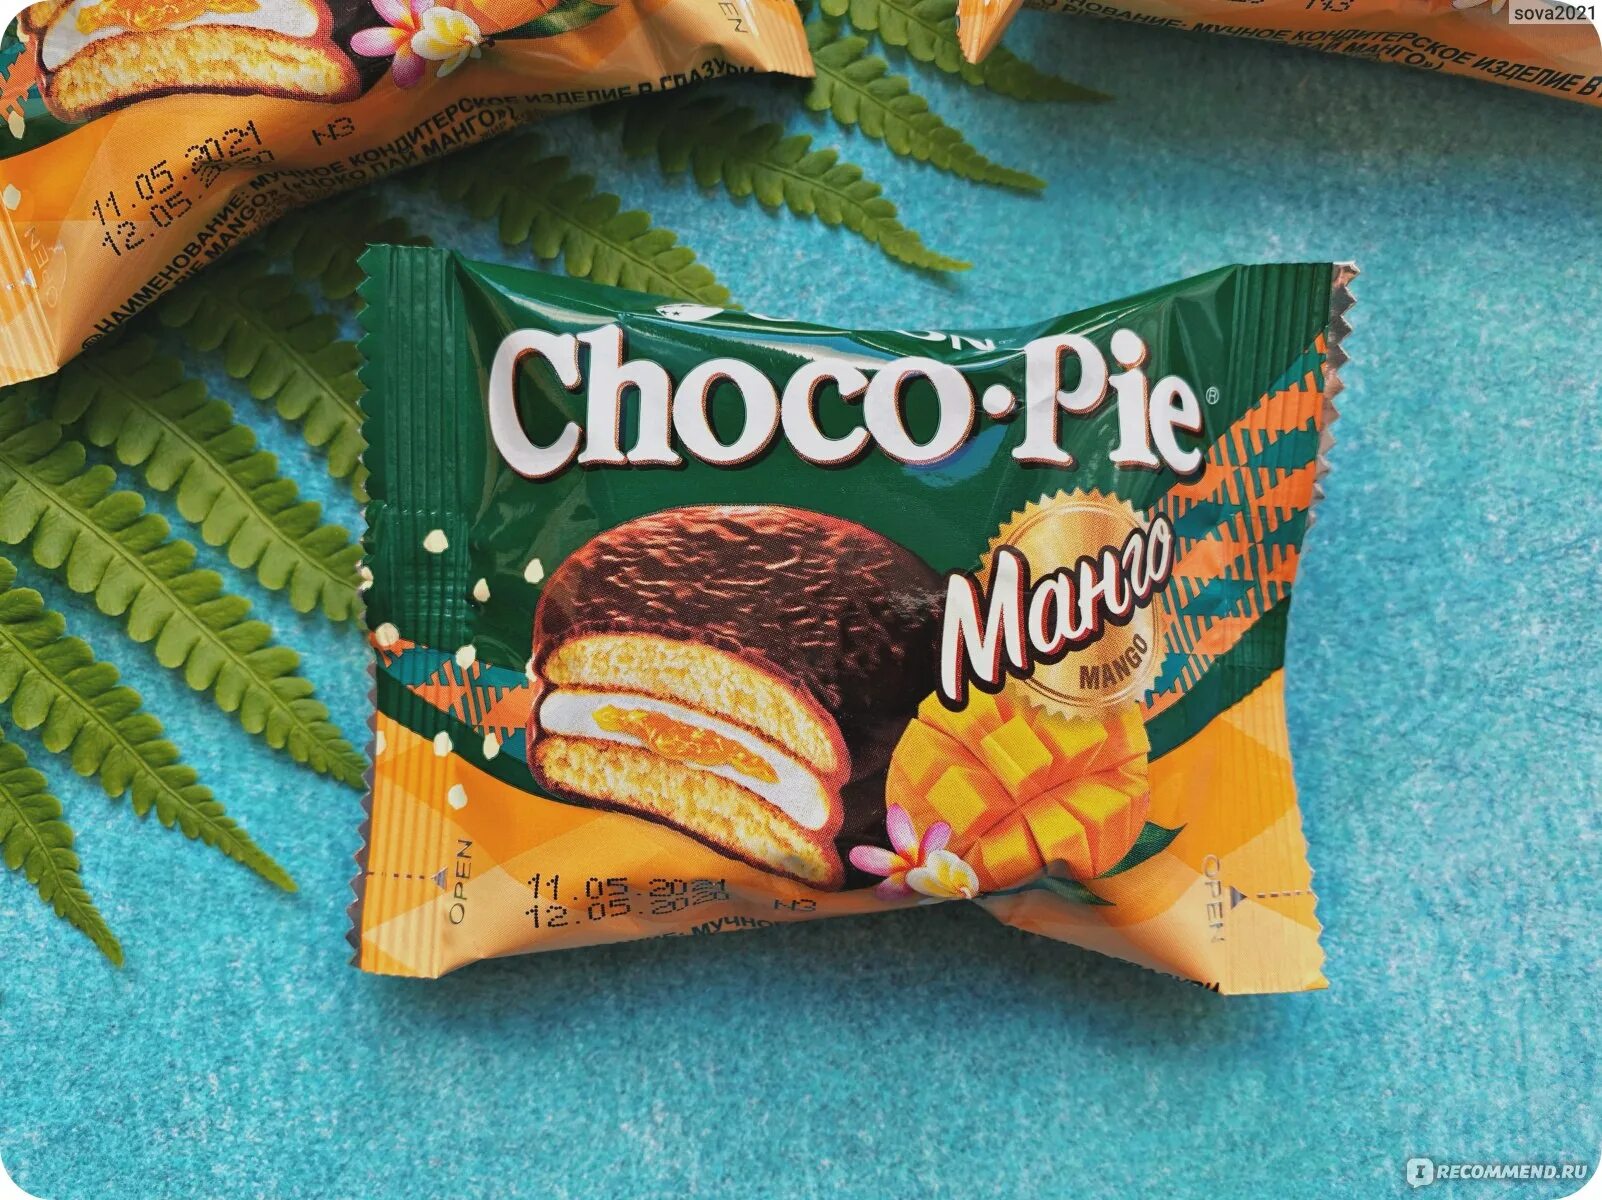 Tondi choco. Печенье Чоко-Пай Орион манго, 360г. Печенье Orion Choco pie манго. Чоко Пай Орион вкусы. Пирожное Orion Choco pie манго.